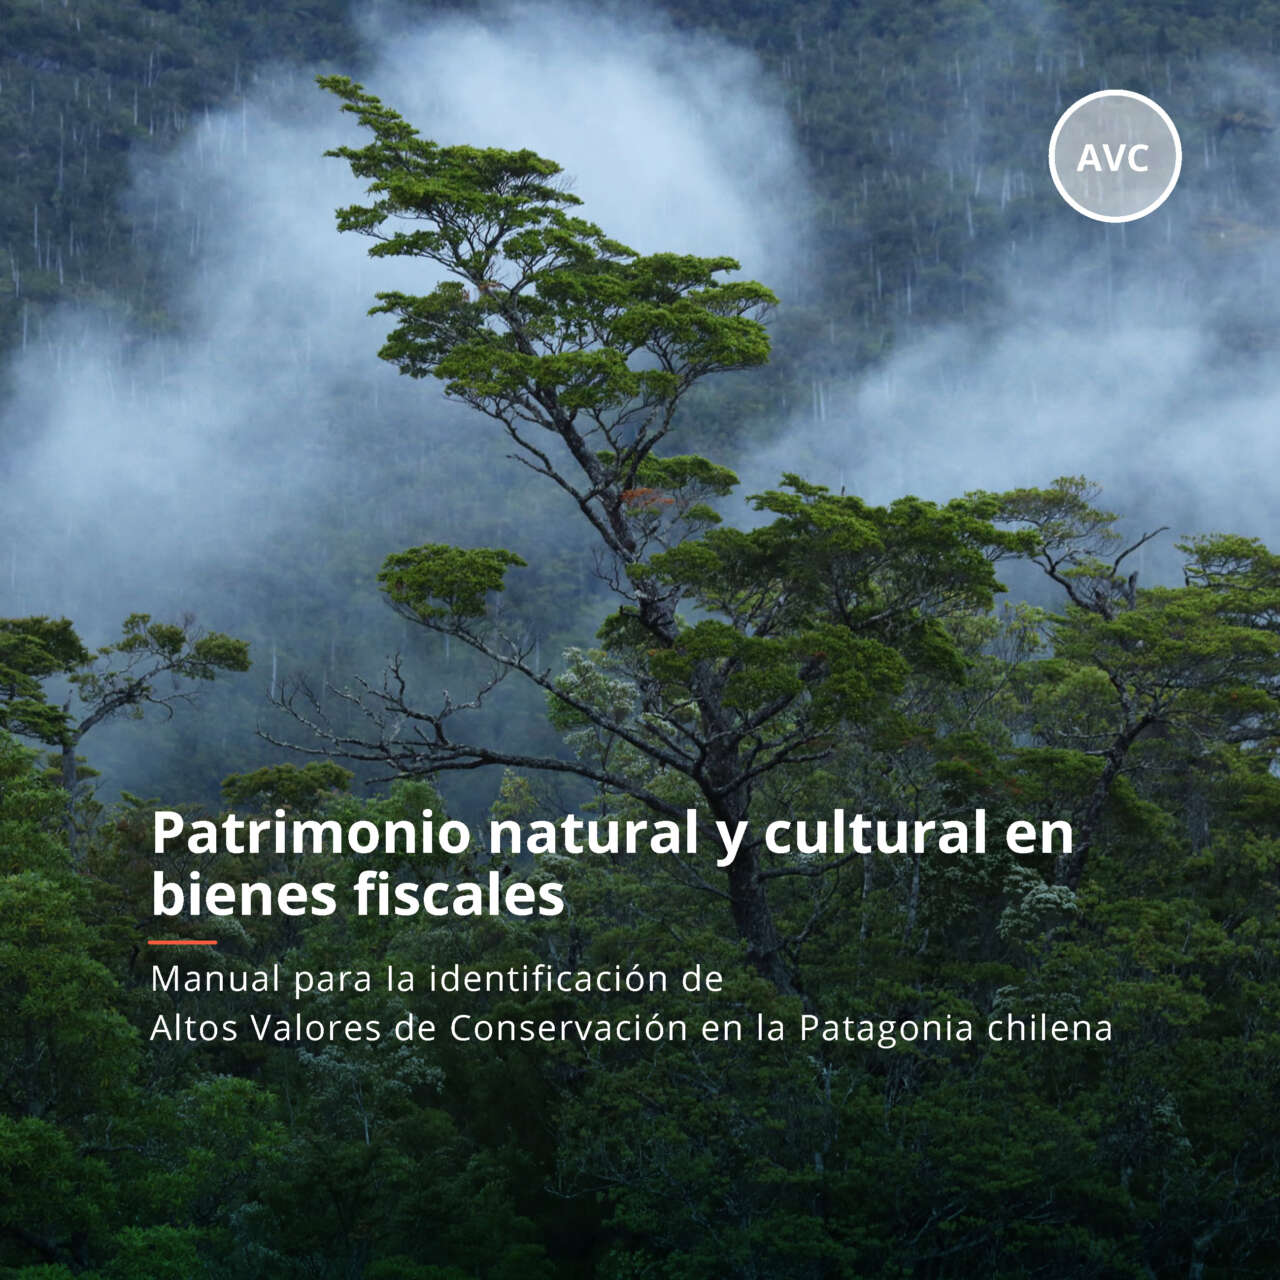 Patrimonio natural y cultural en bienes fiscales: Manual para Ia identificación de Altos Valores de Conservación en la Patagonia chilena